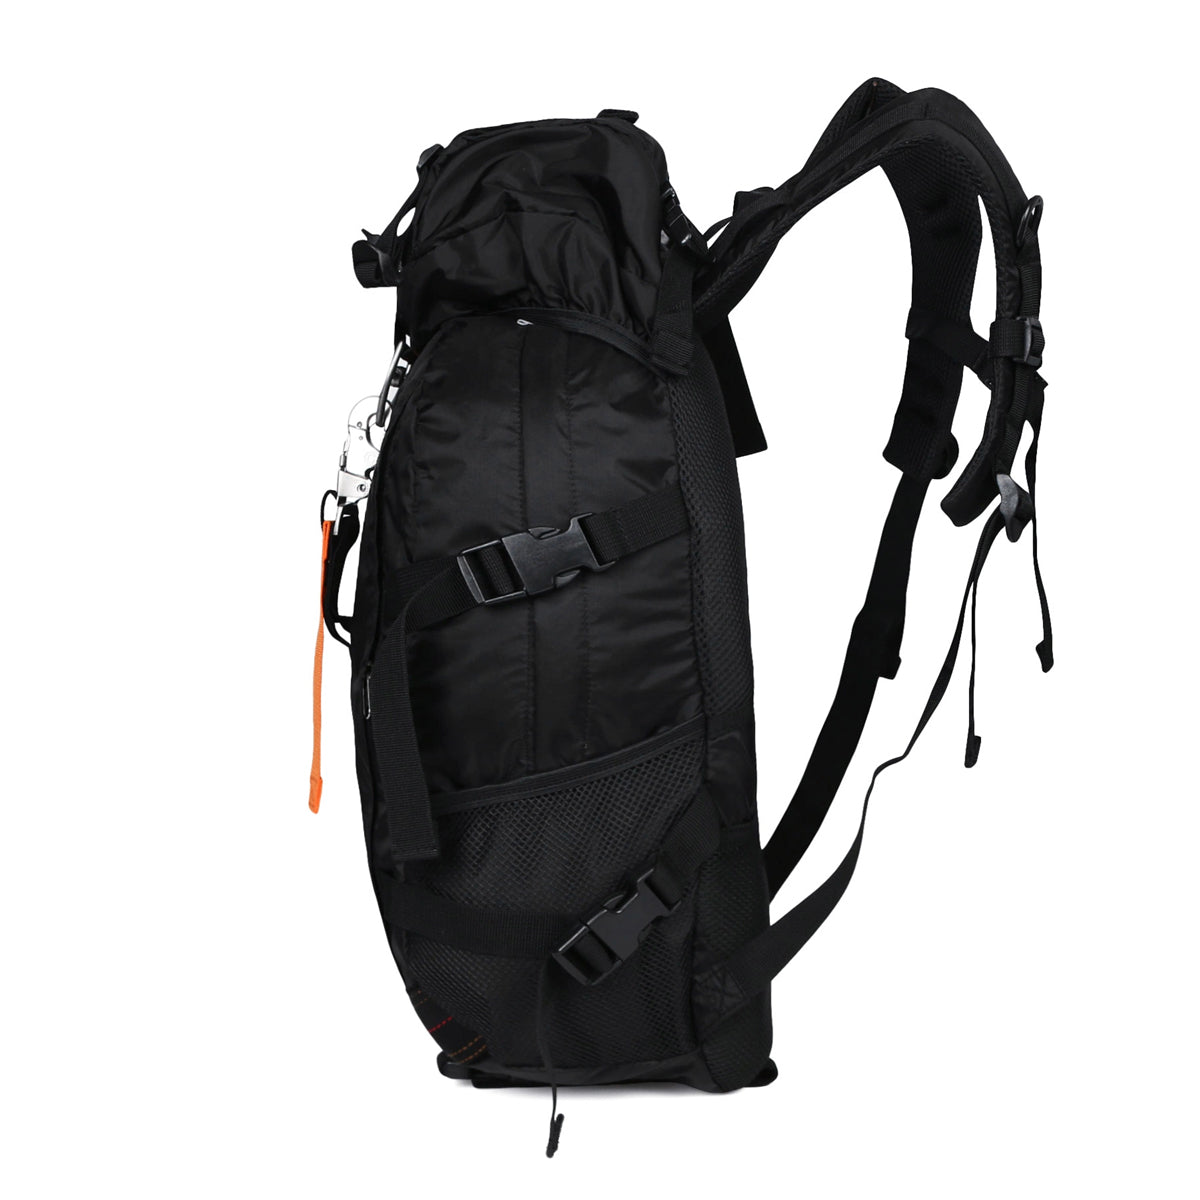 Premium Black Backpack for Outdoor Activities